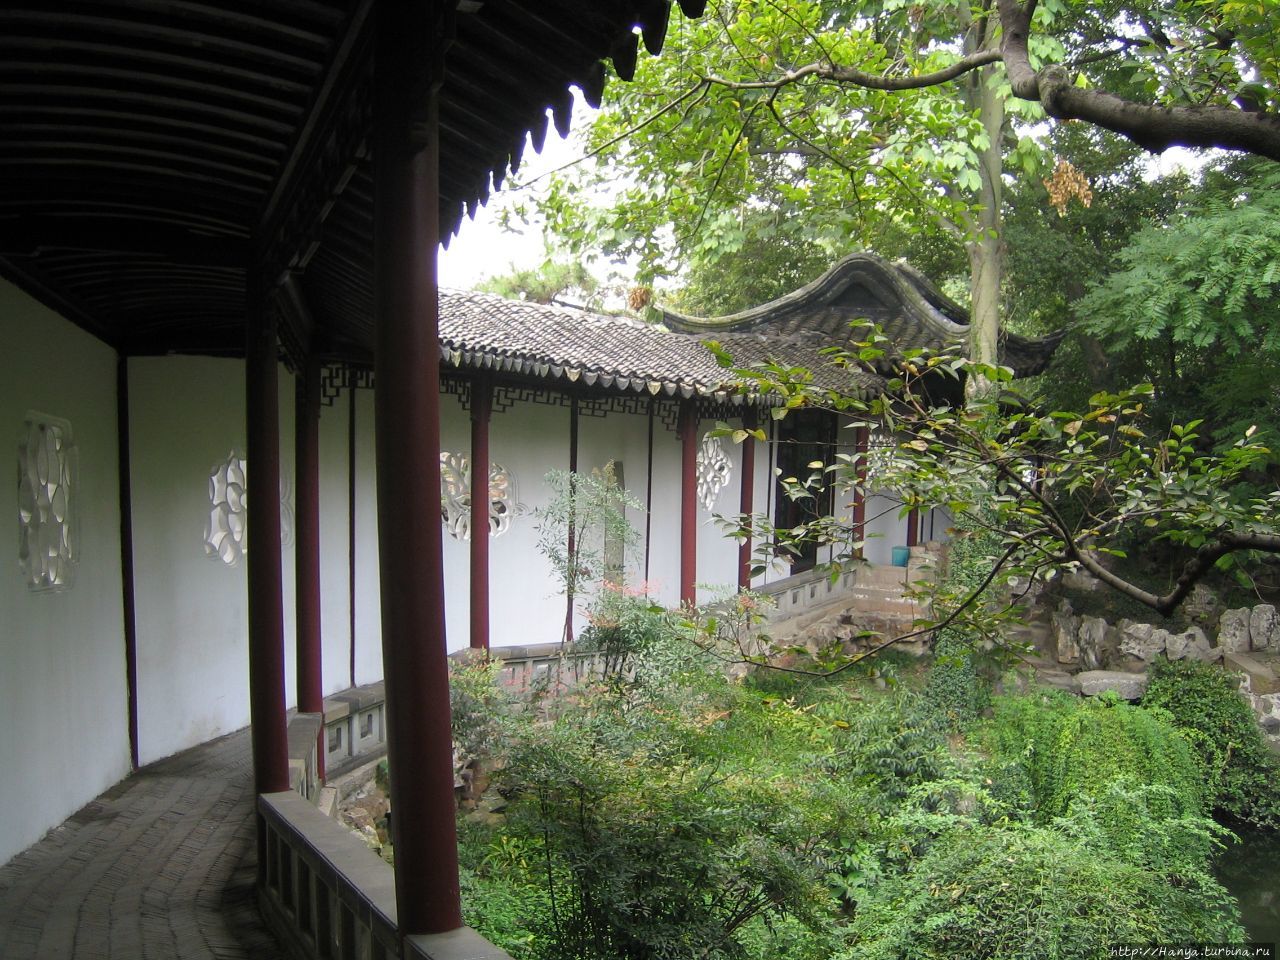 Сучжоу. Сад  вздымающихся волн – старейший сад в городе Сучжоу, Китай